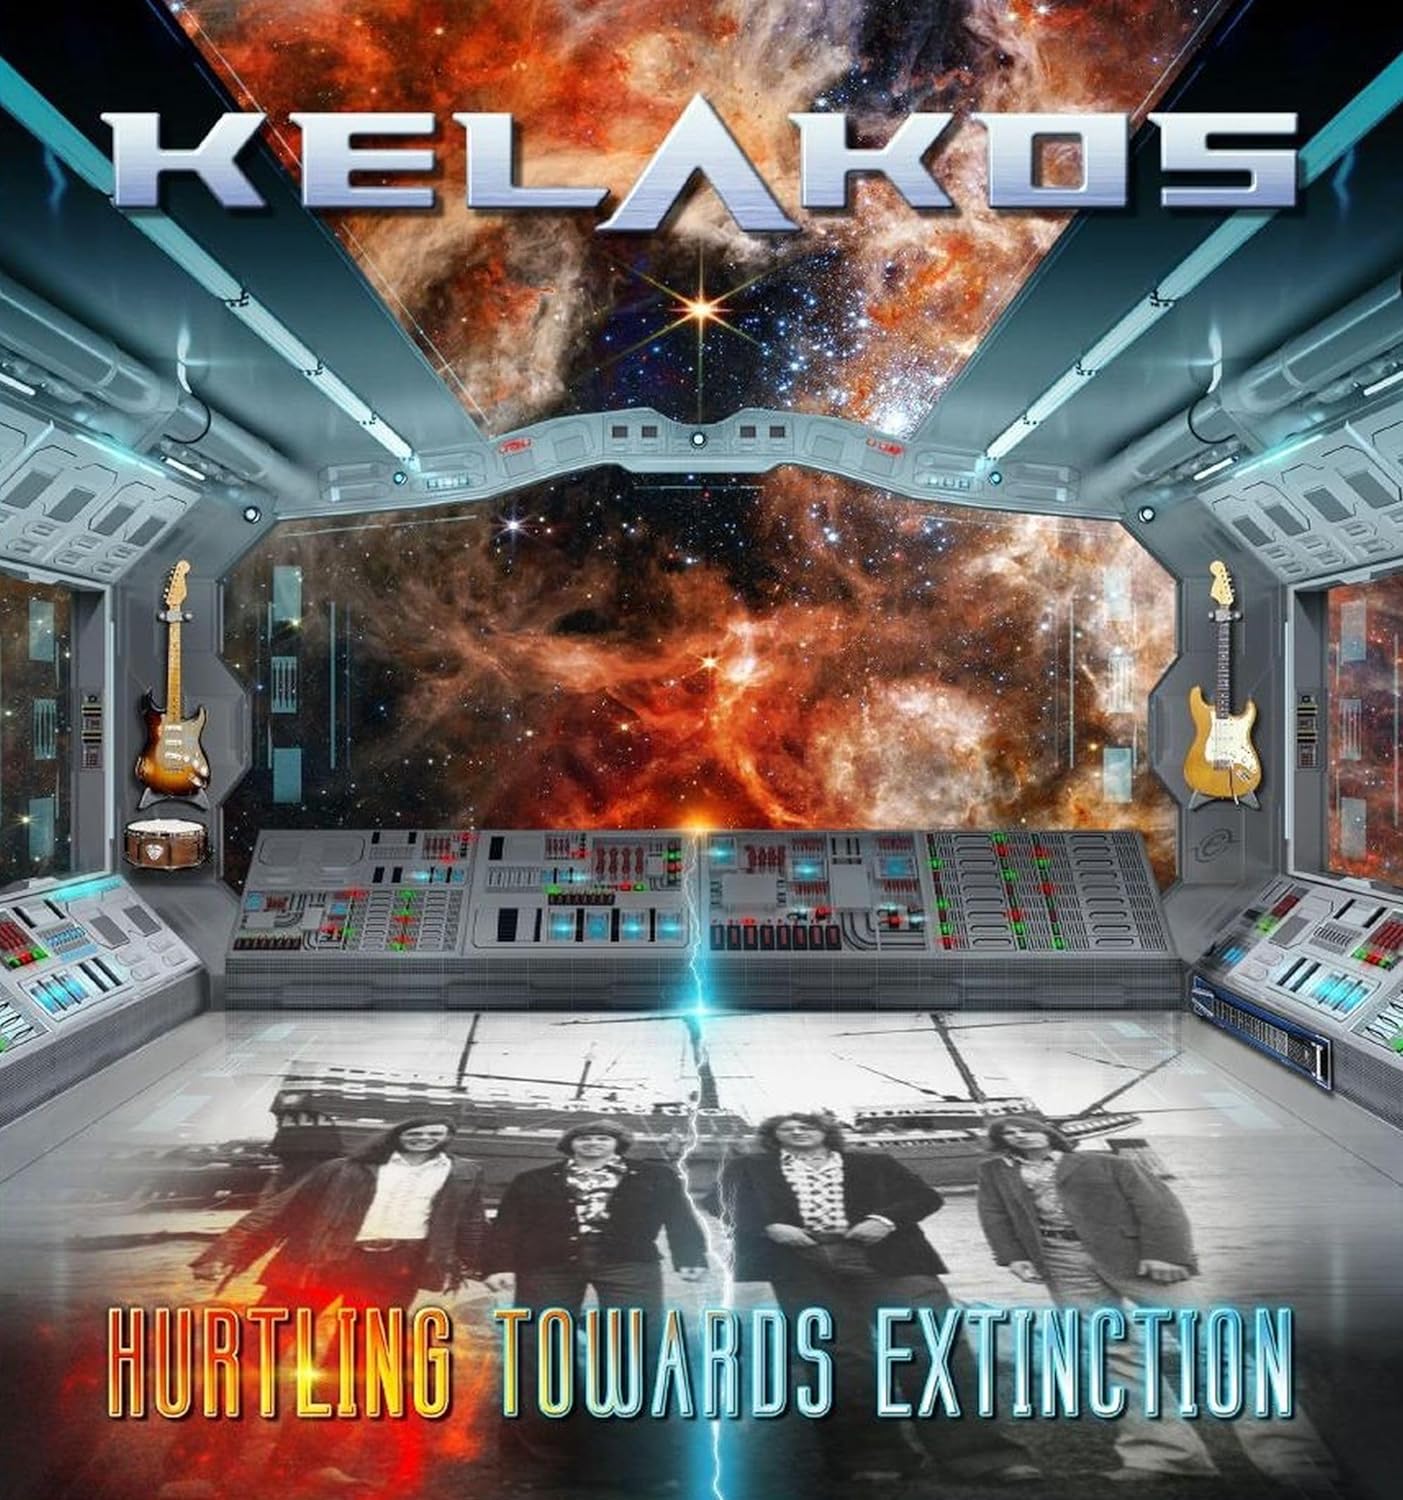 Vintage Verve, Modern Sound: Kelakos Announces Comeback with 'Hurtling Towards Extinction'